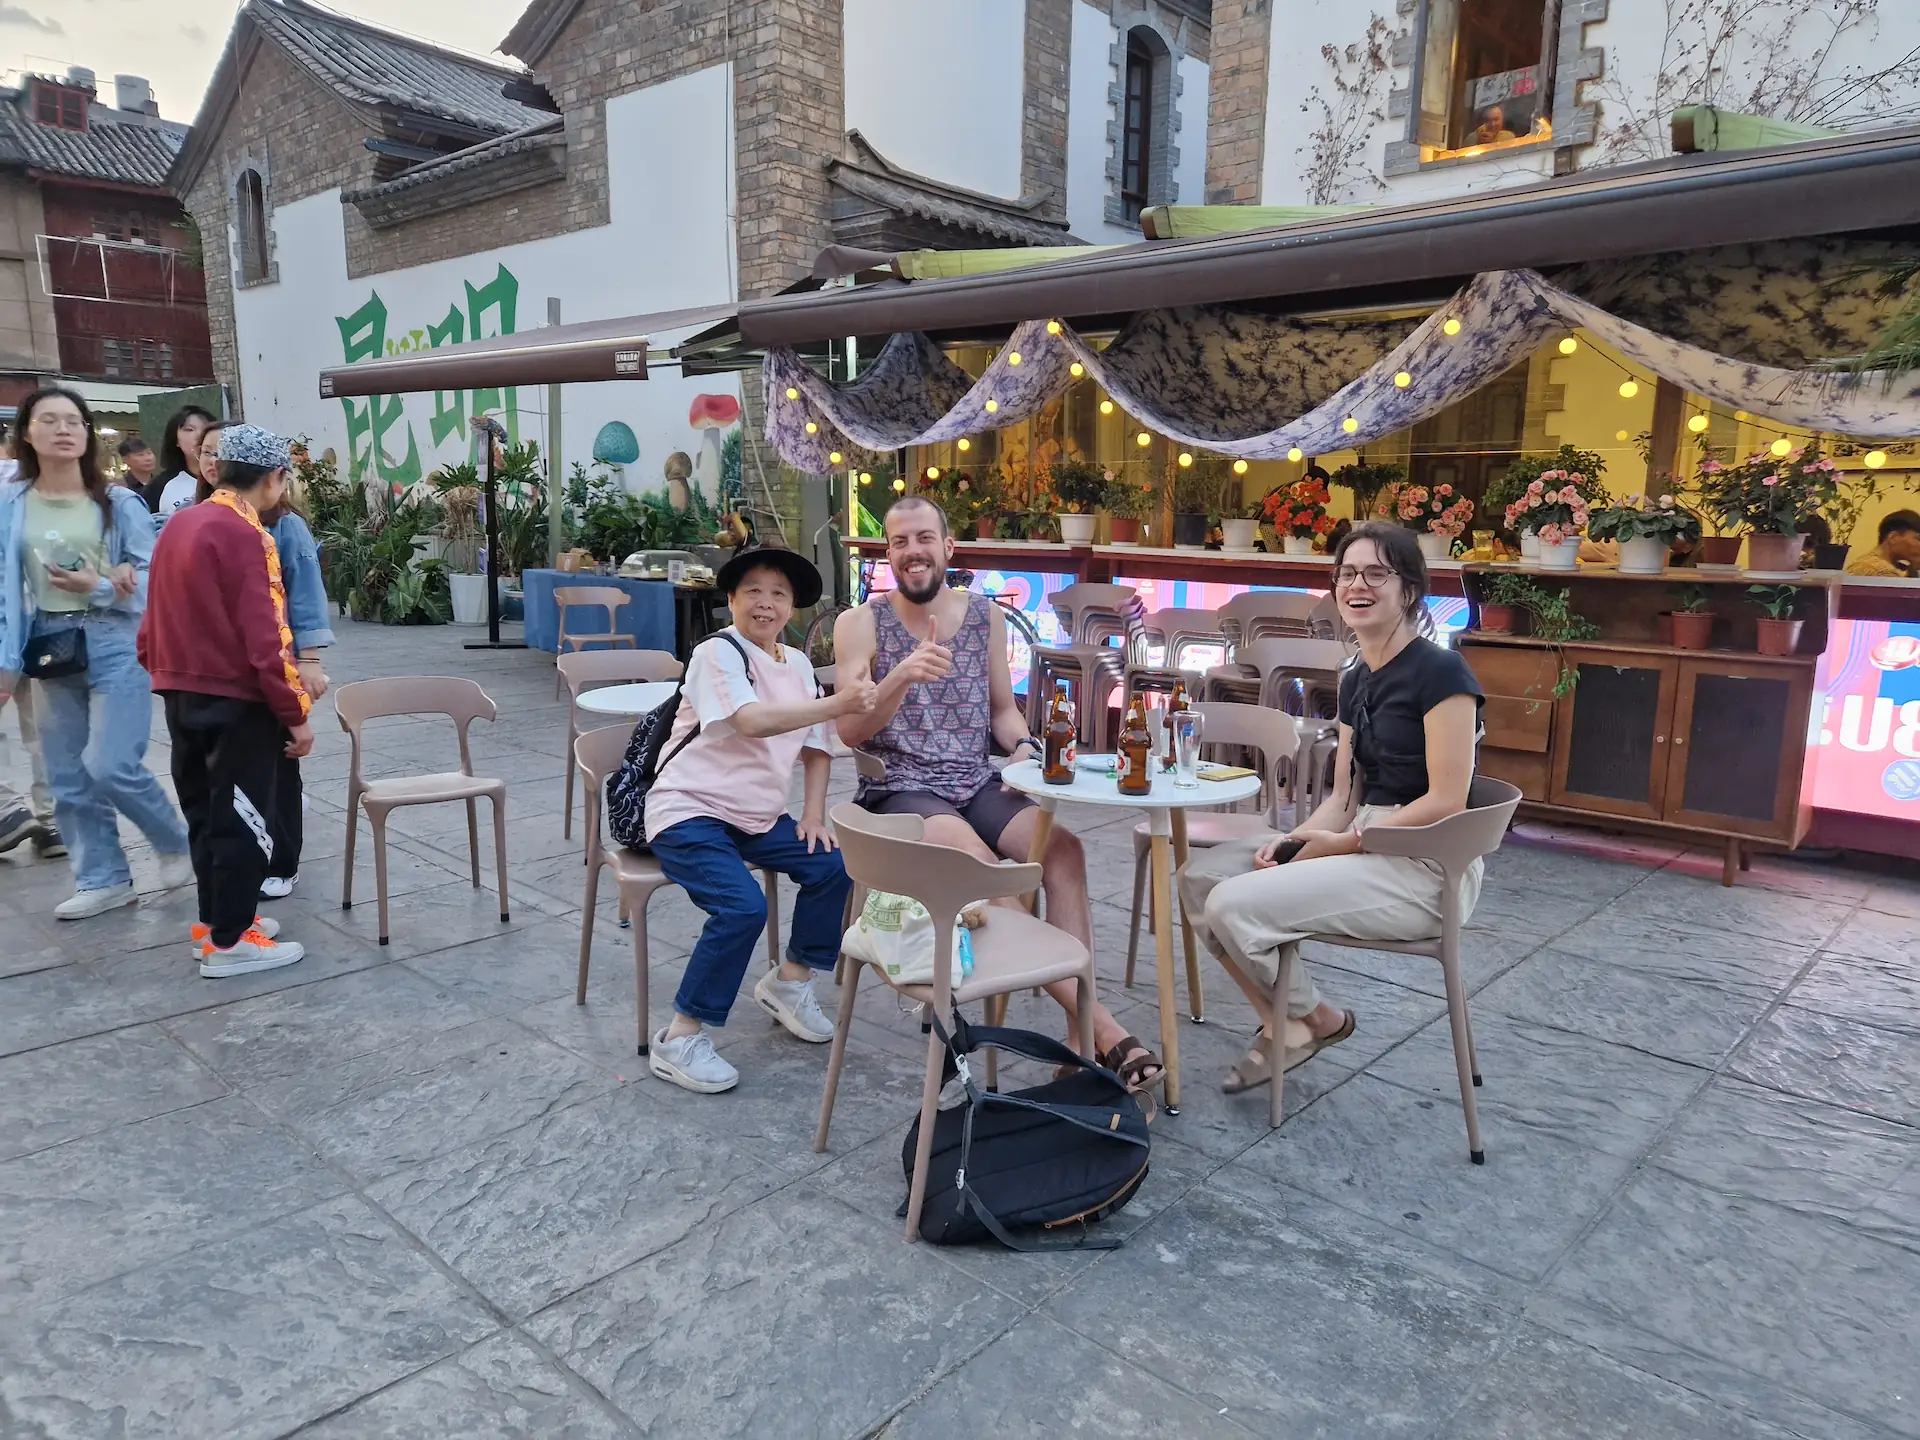 À notre petite table au milieu de la place, Robin, So et une touriste chinoise sourient à la caméra en faisant un pouce.